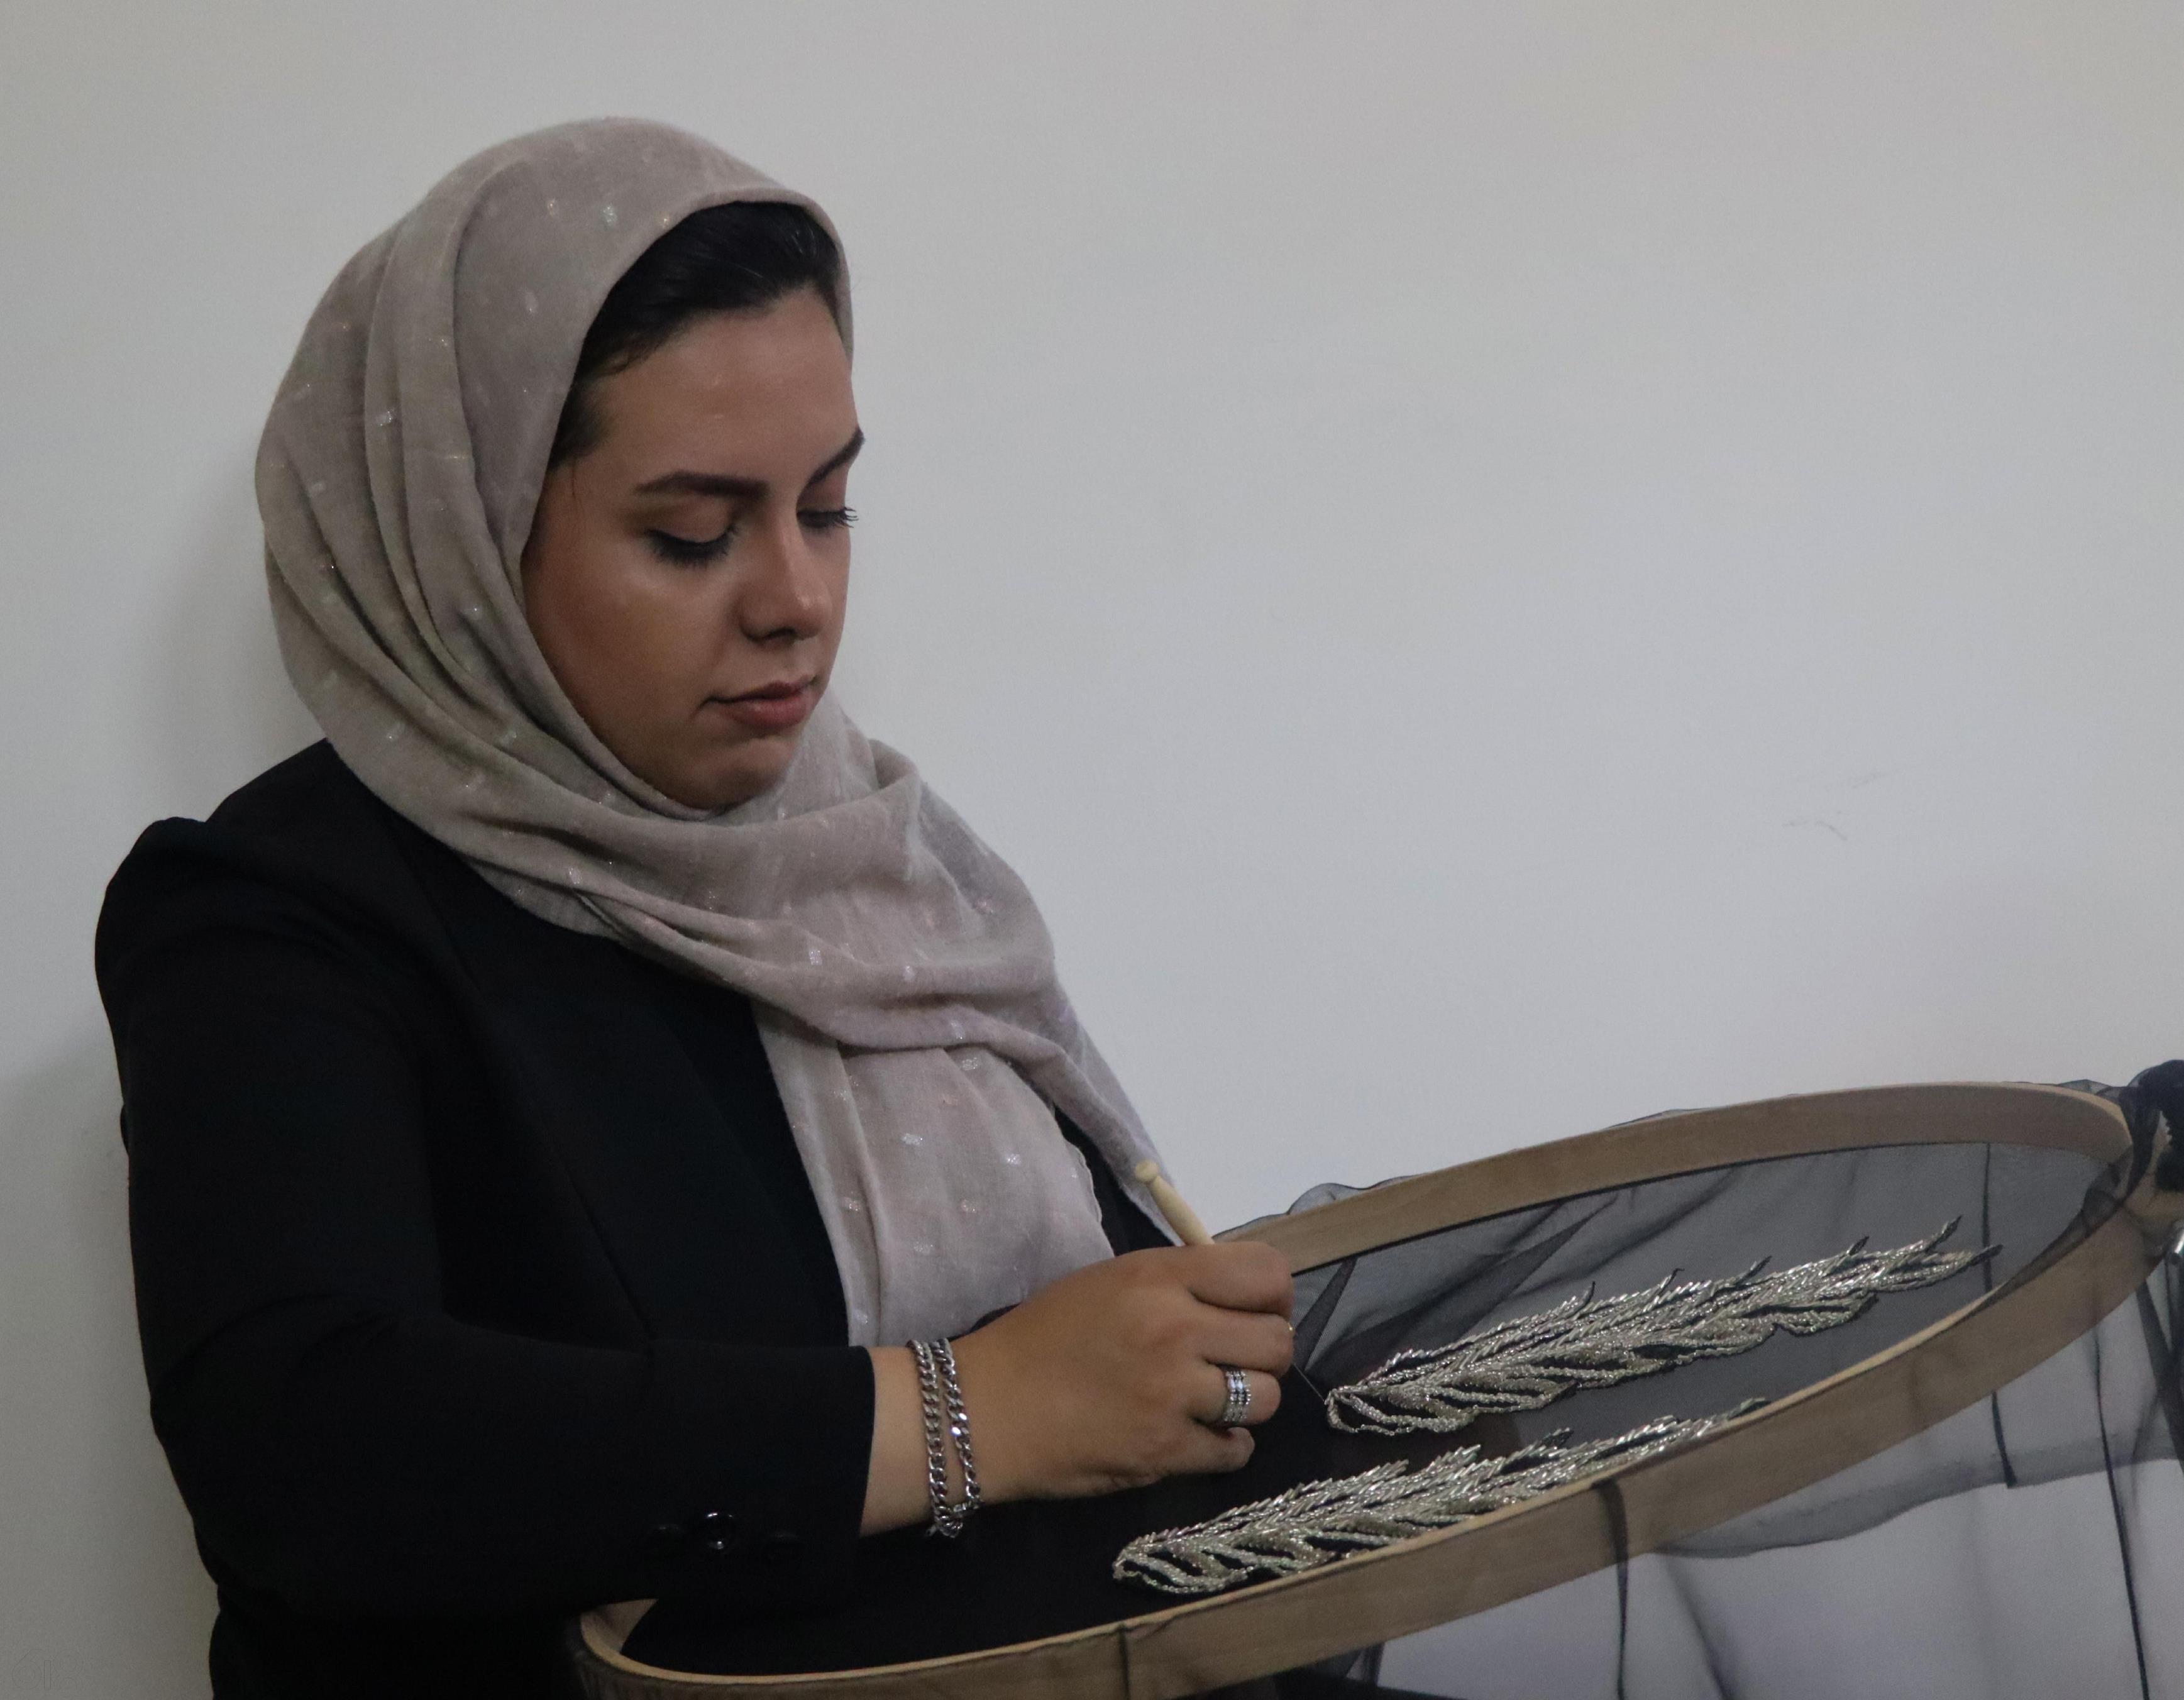 استودیو هنری بنداری، آموزش دیزاین لباس و پارچه سازی با سوزن تمبور (جواهردوزی/گلدوزی) در مشهد، تمبوردوزی، تنبوردوزی، جواهردوزی